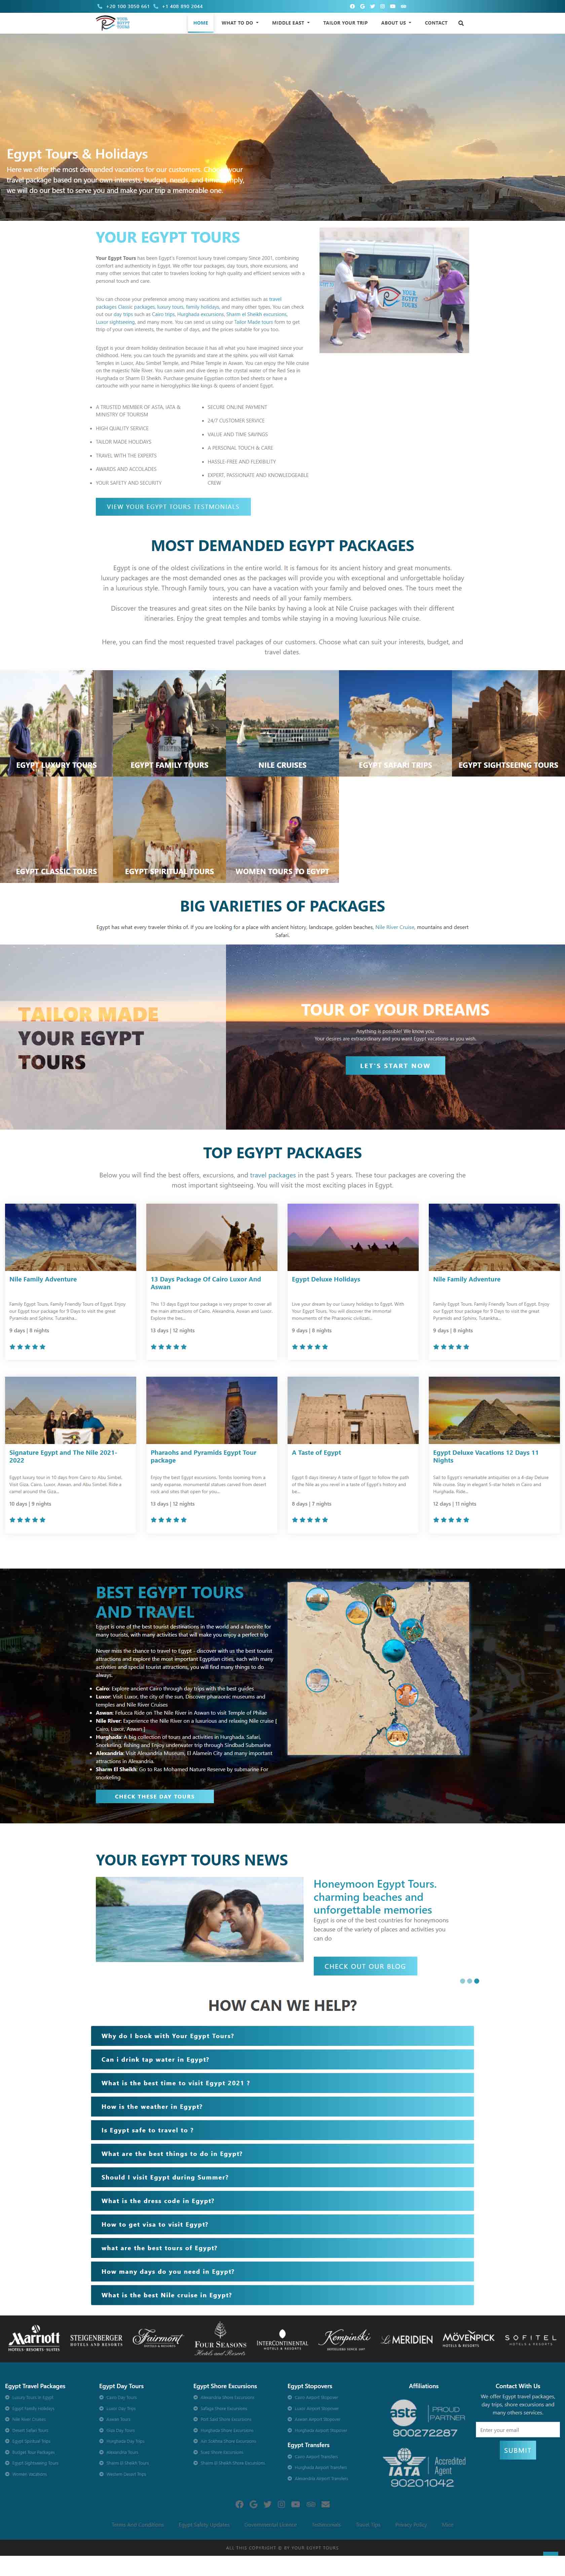 Your Egypt Tours